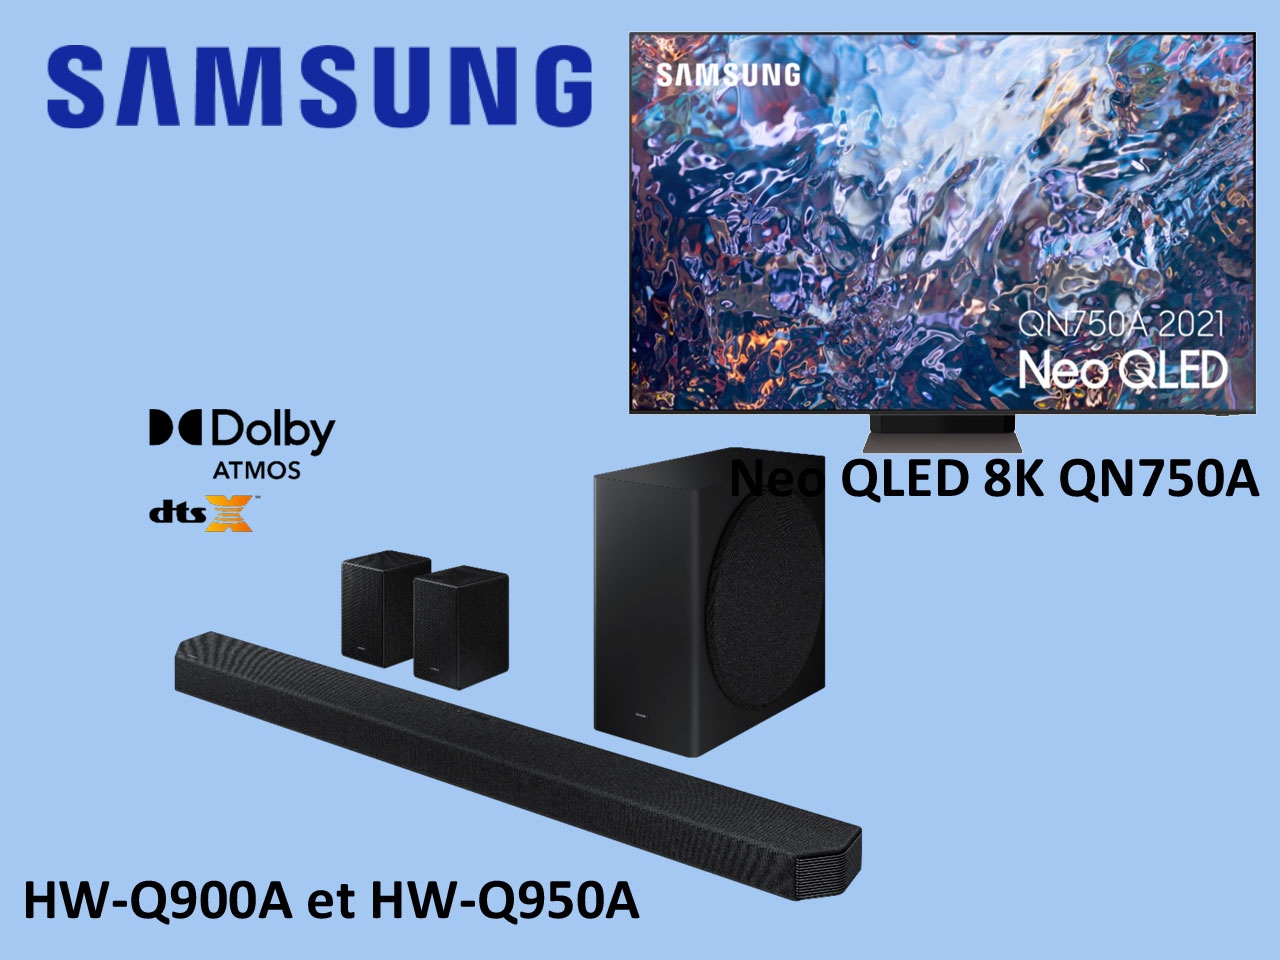 Samsung lance le Neo QLED 8K QN750A, et complète ses barres de son premium Q-Series 2021